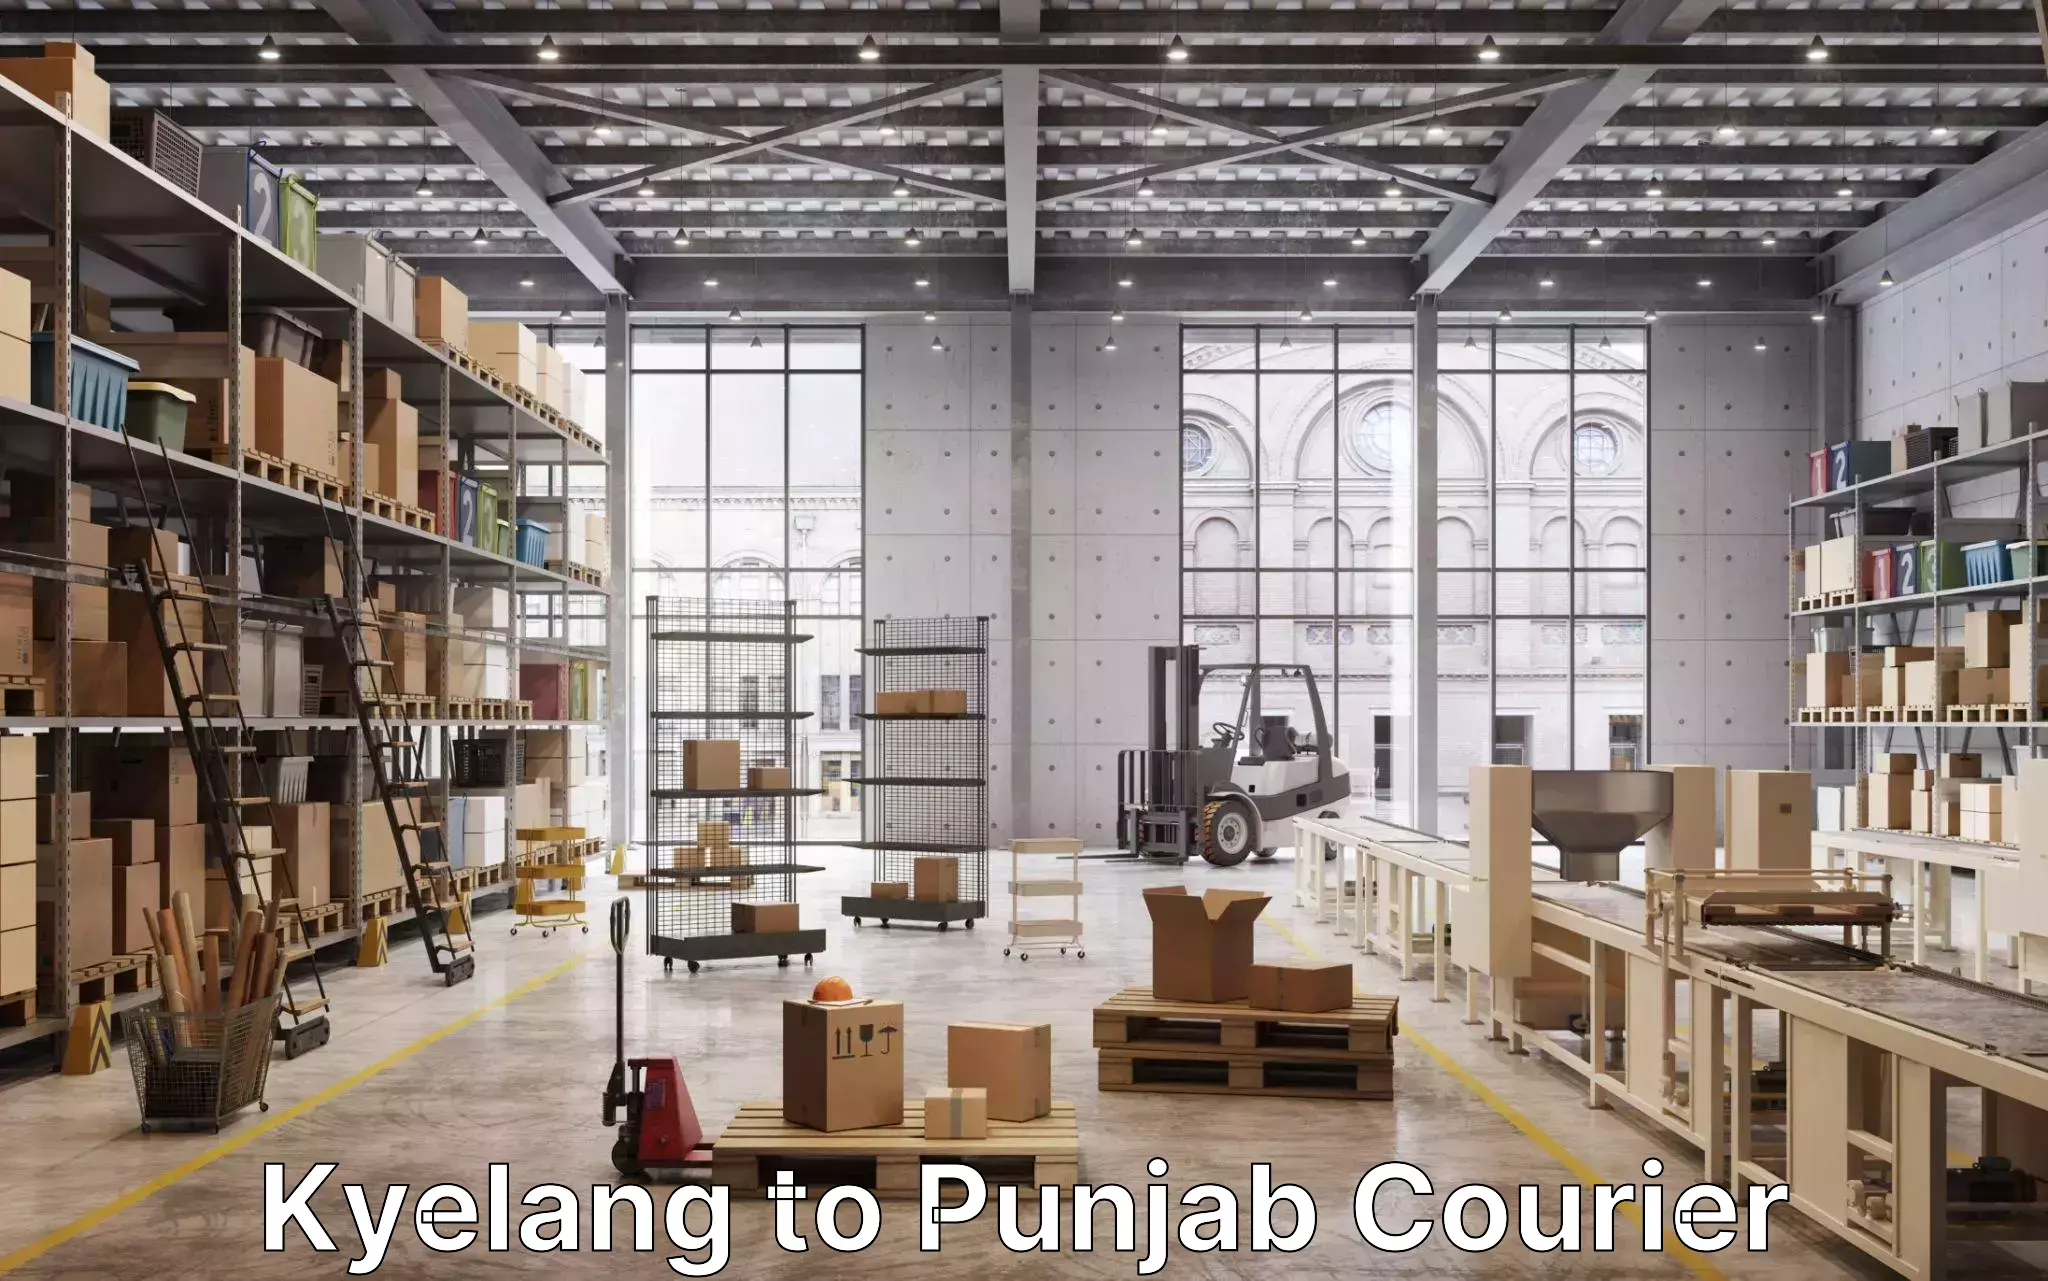 Household moving experts Kyelang to Punjab